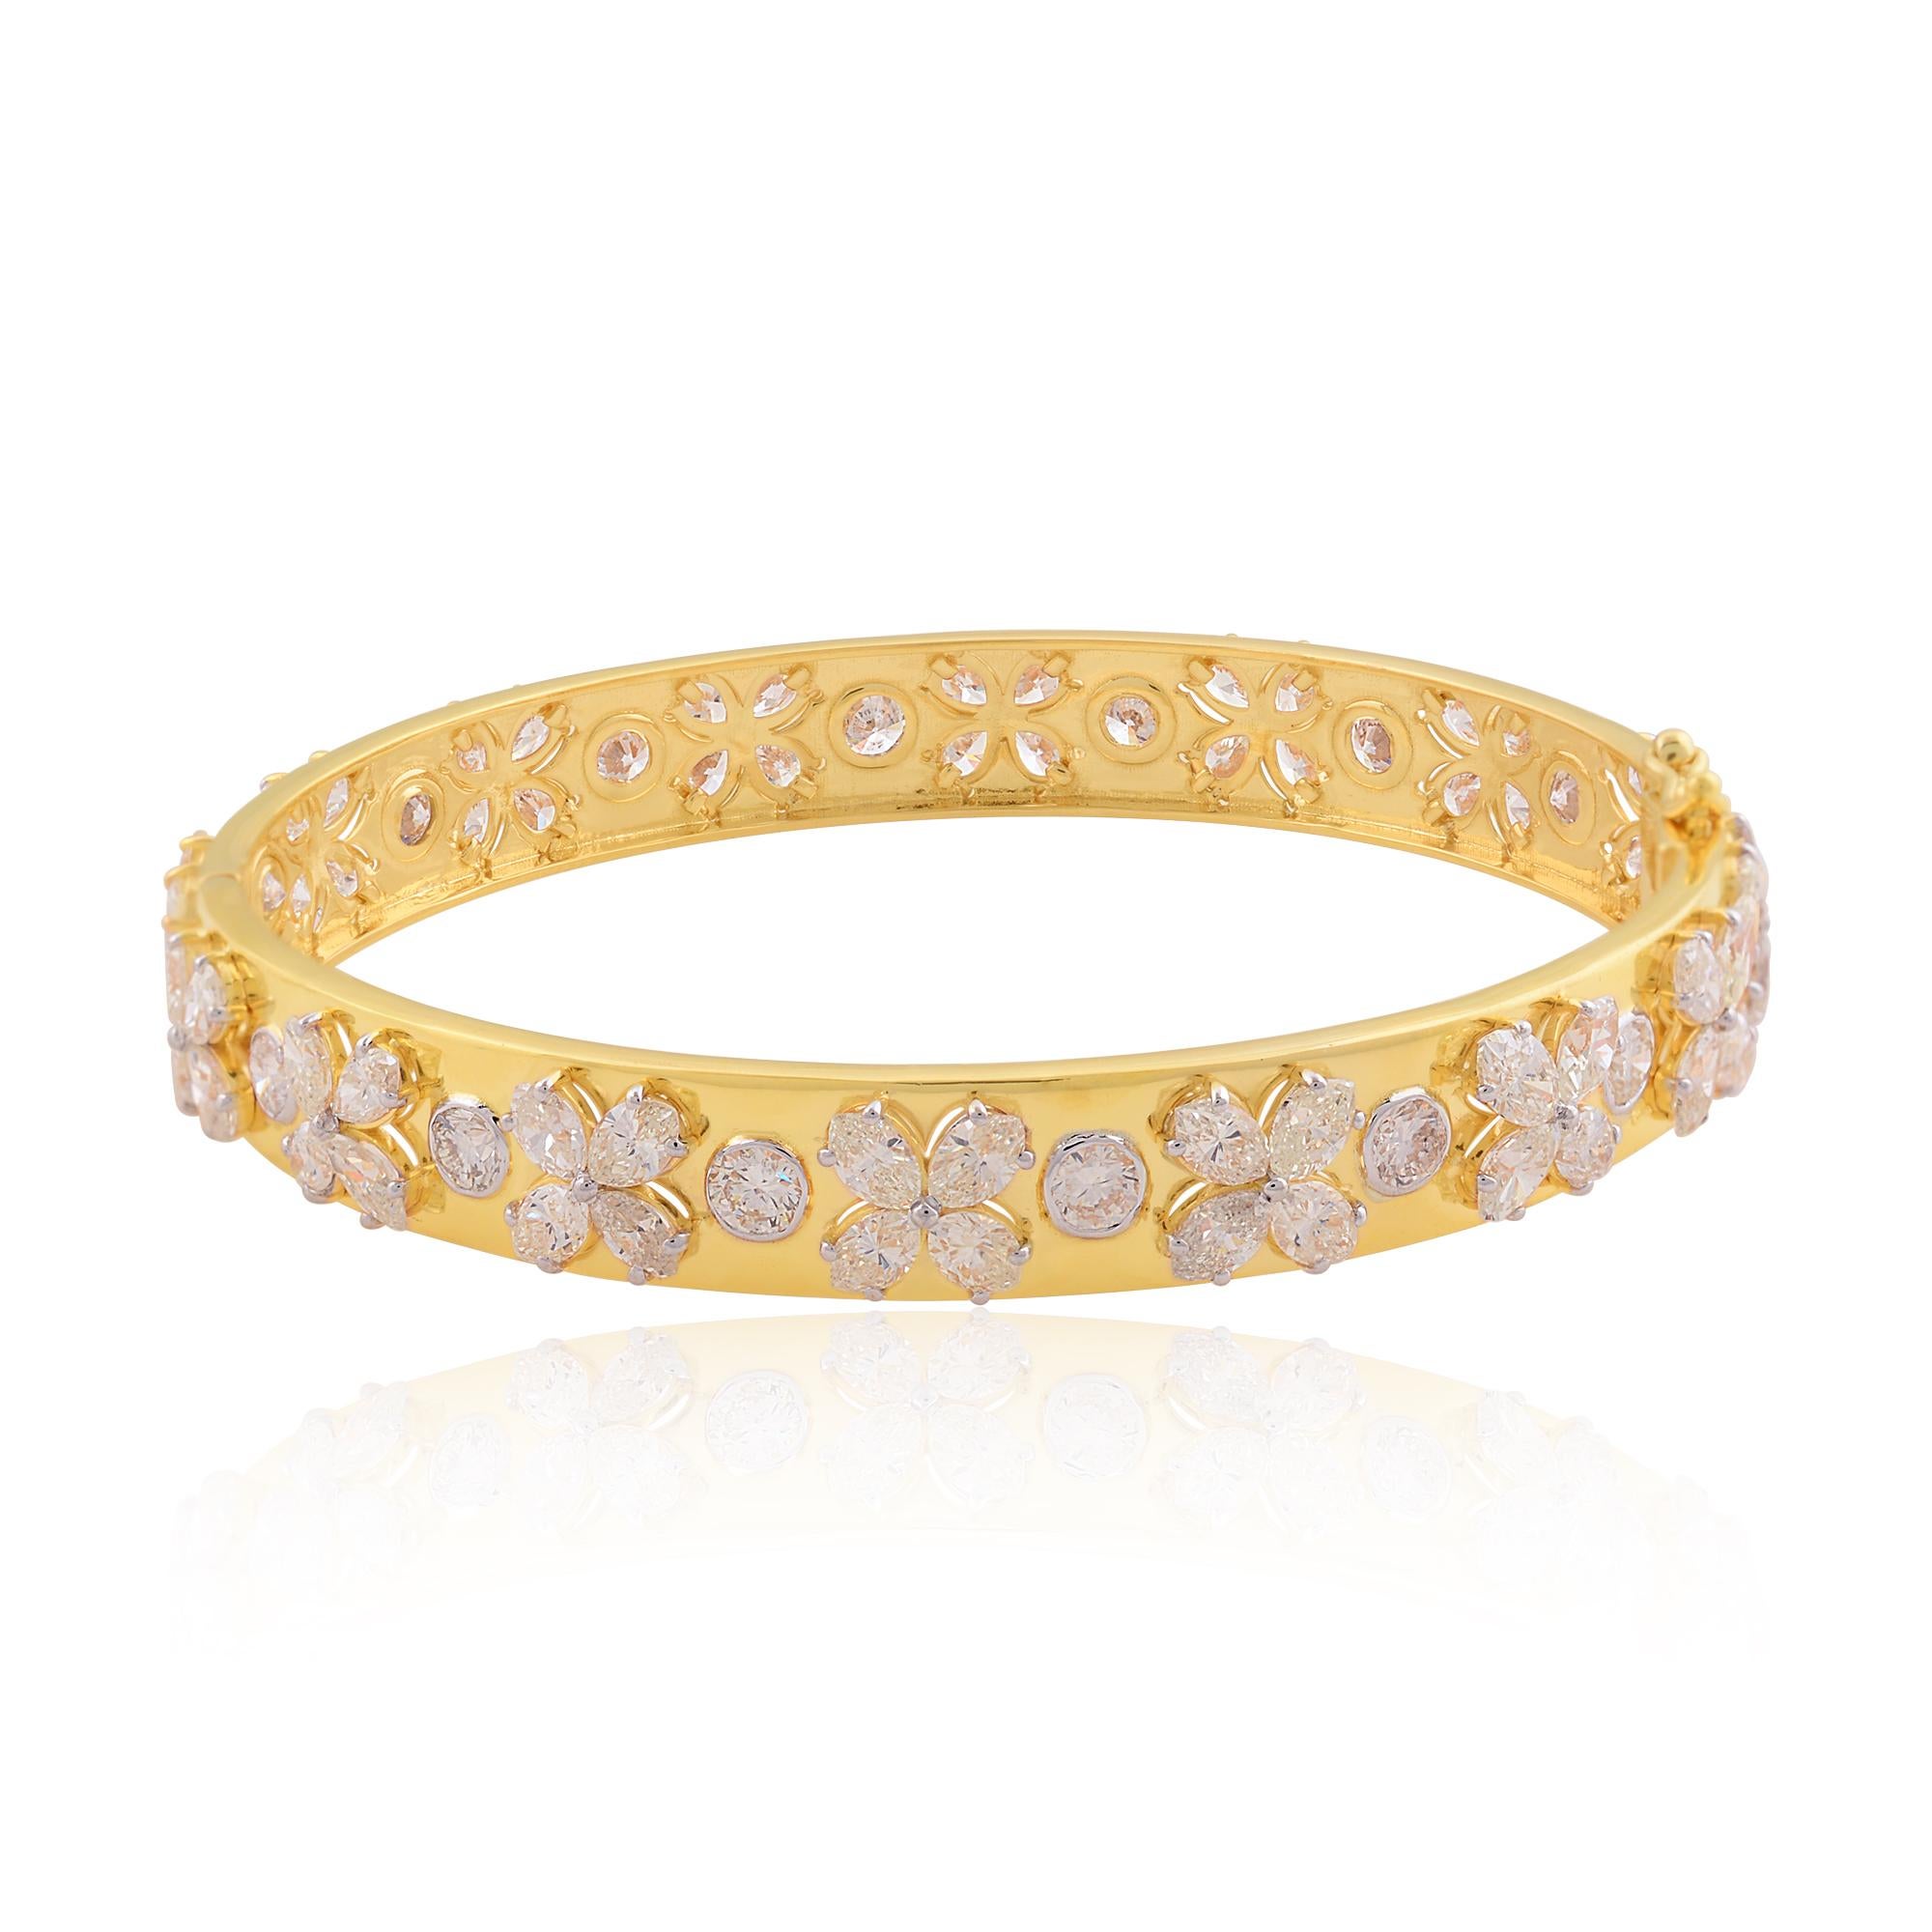 Ce superbe bracelet trèfle en diamant est un accessoire luxueux et intemporel qui ajoutera une touche d'élégance à n'importe quelle tenue. Le bracelet présente des diamants ronds et marquises étincelants, sertis dans de l'or massif 14k.

C'est un